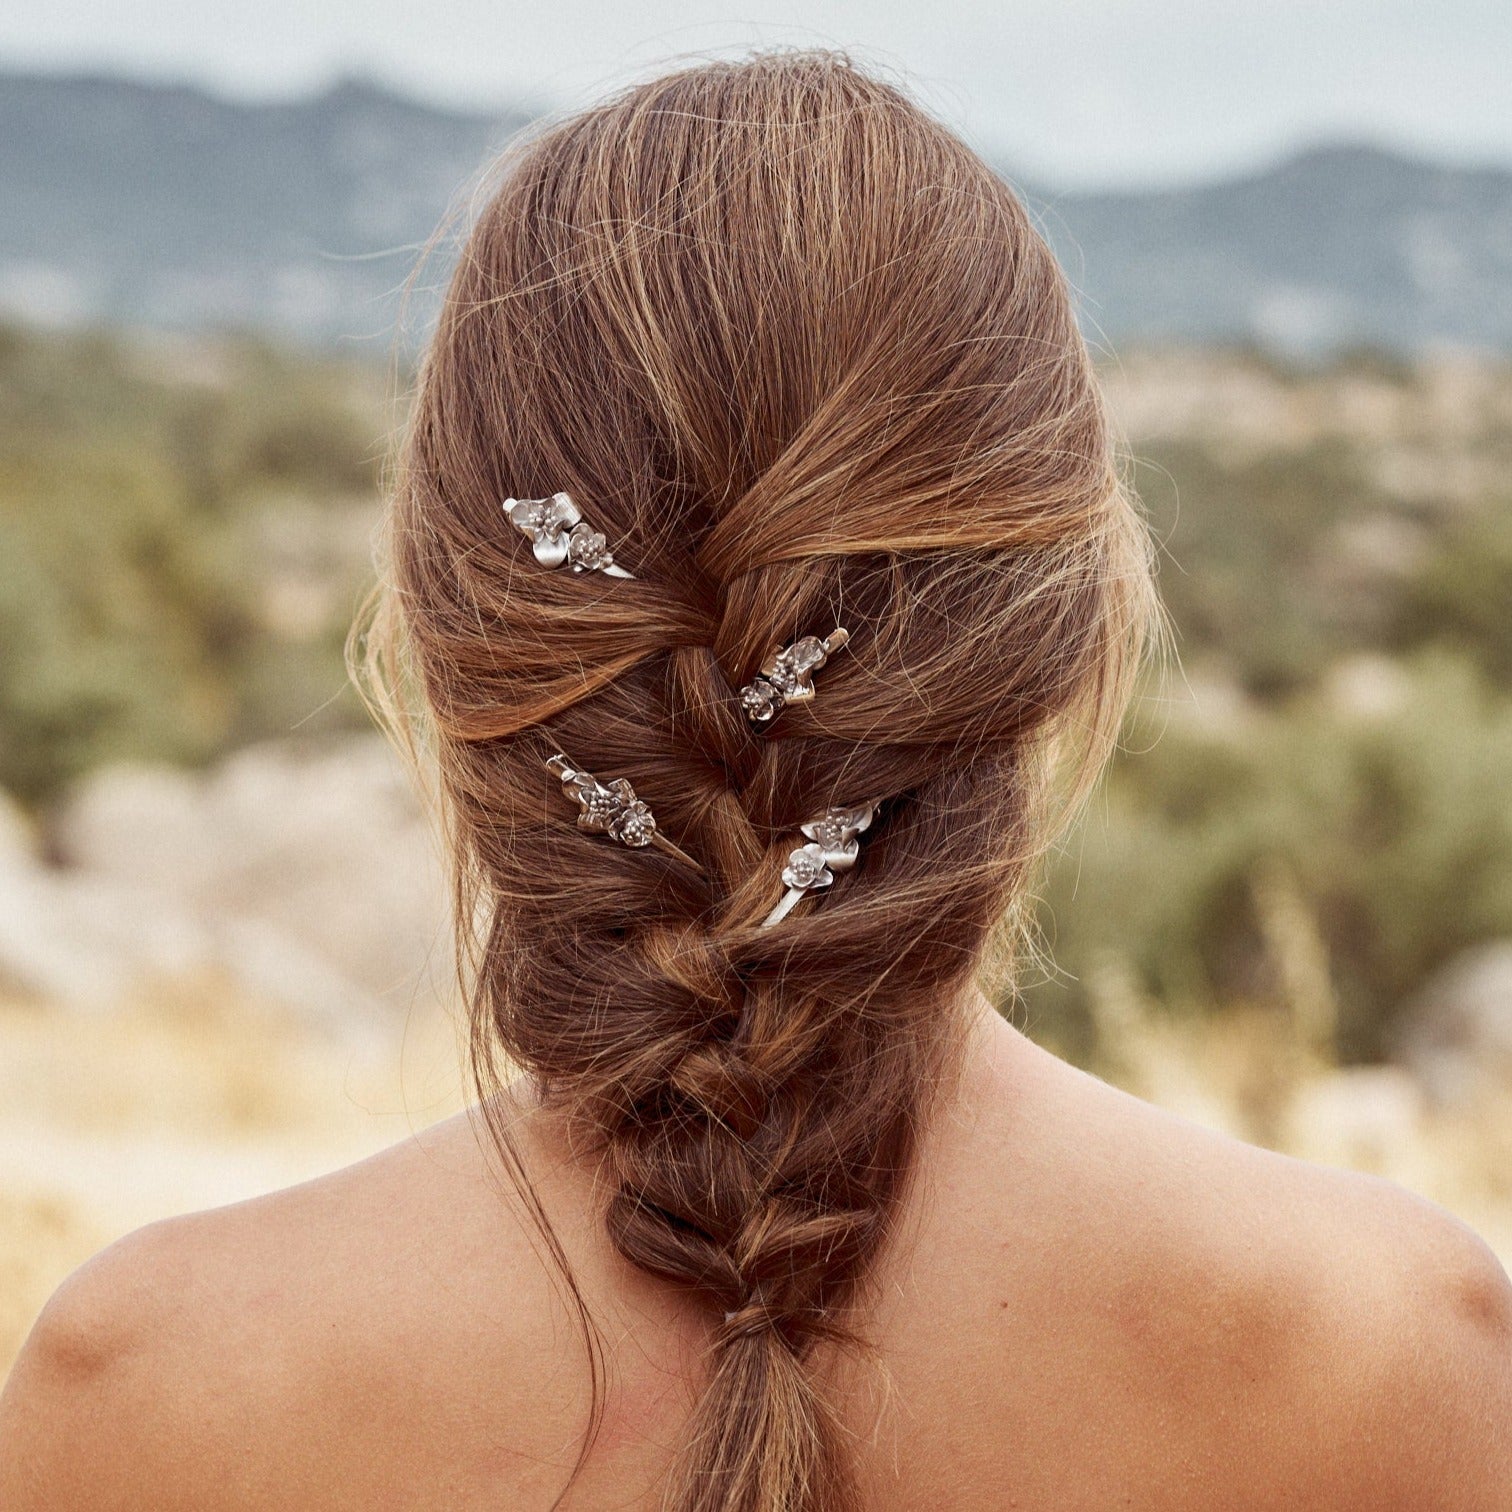 Modelo mostrando su peinado con los pasadores Flora, accesorio para adornar el cabello con forma de flores, realizado a mano con plata de ley.